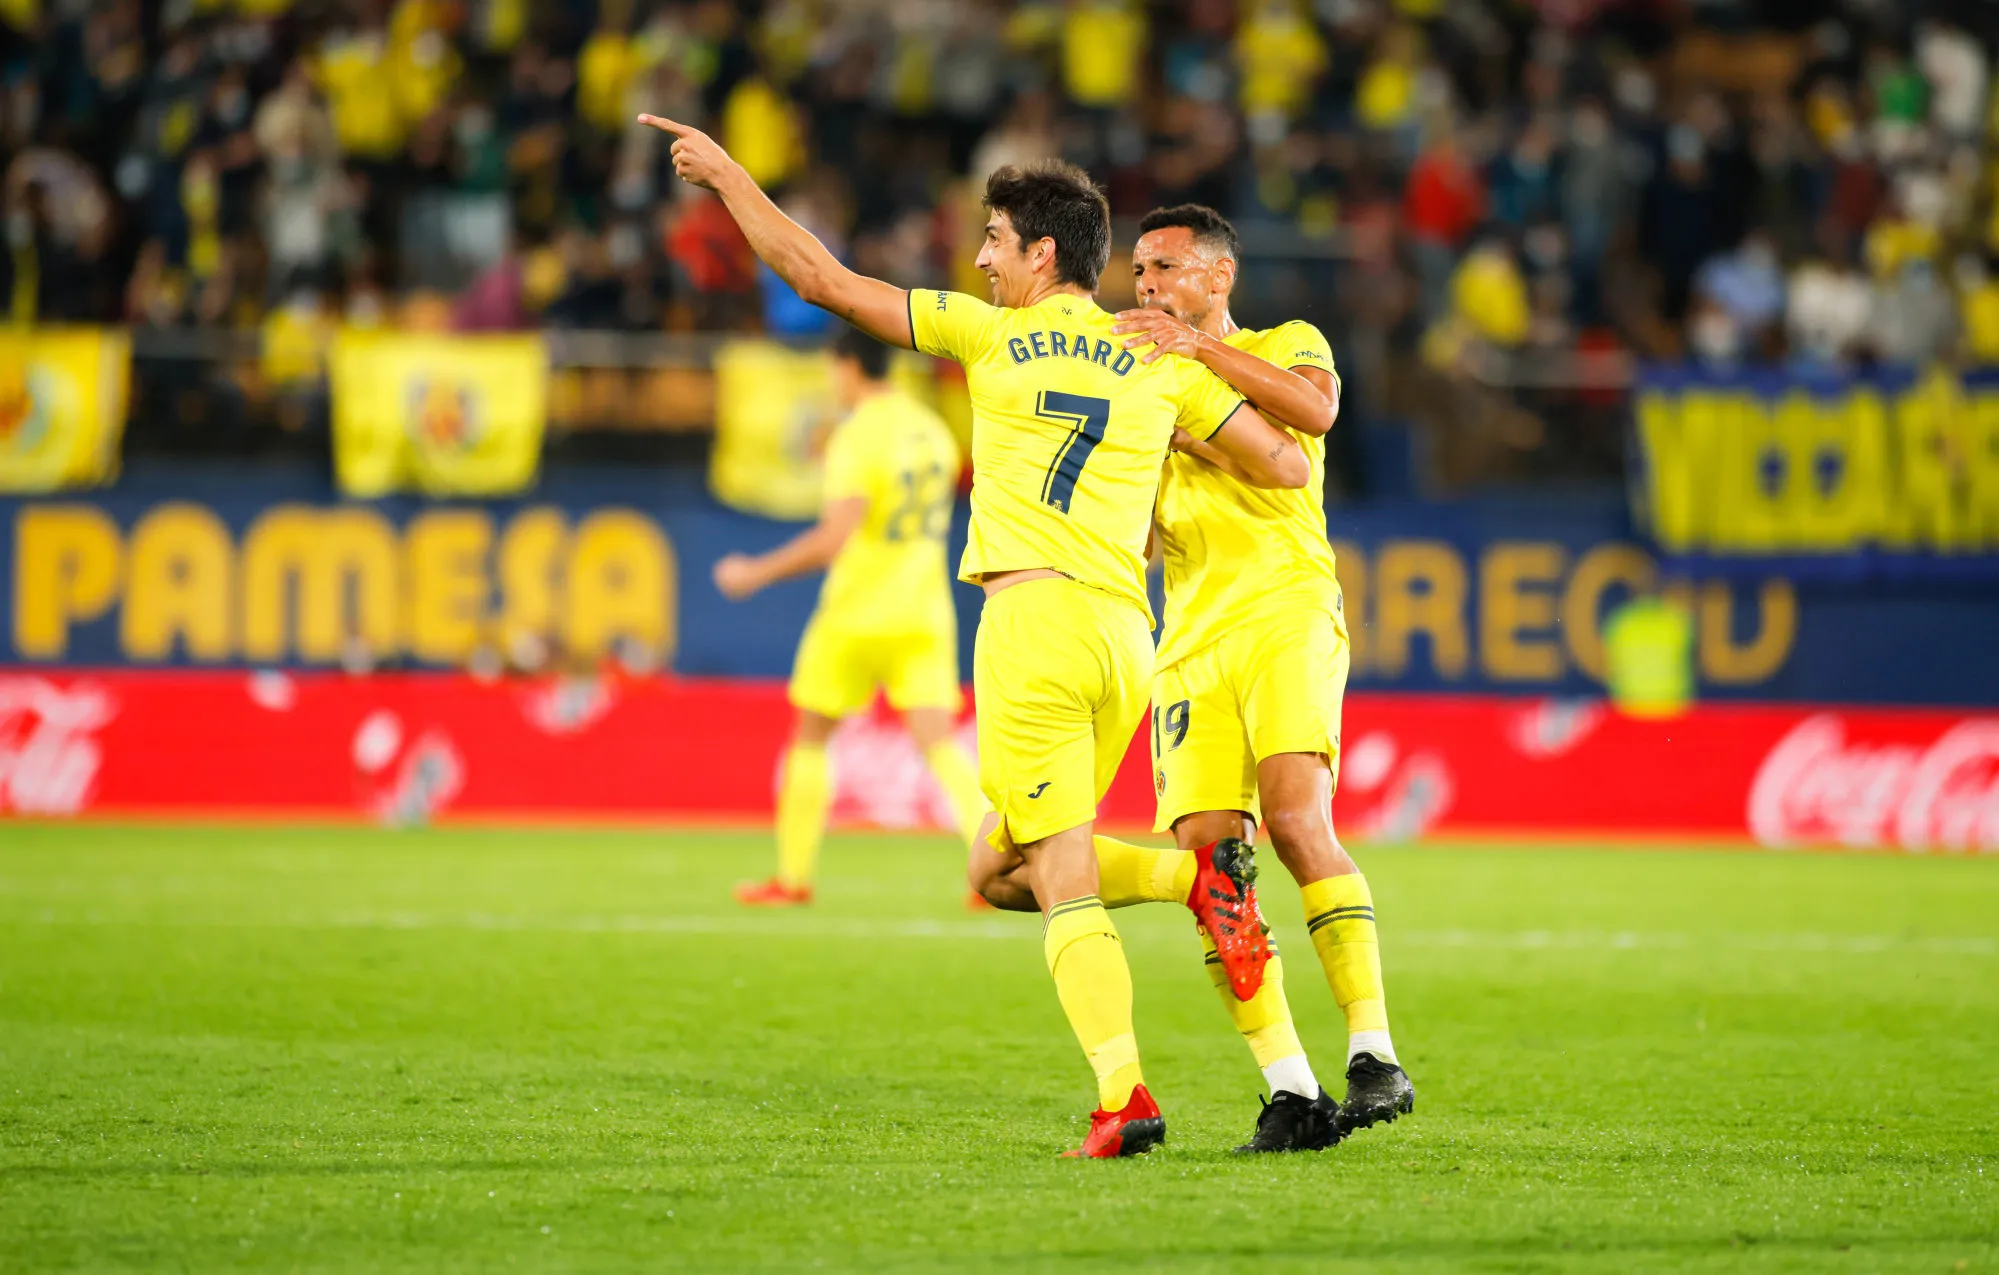 Pronostic Villarreal Young Boys Berne : Analyse, cotes et prono du match de Ligue des Champions